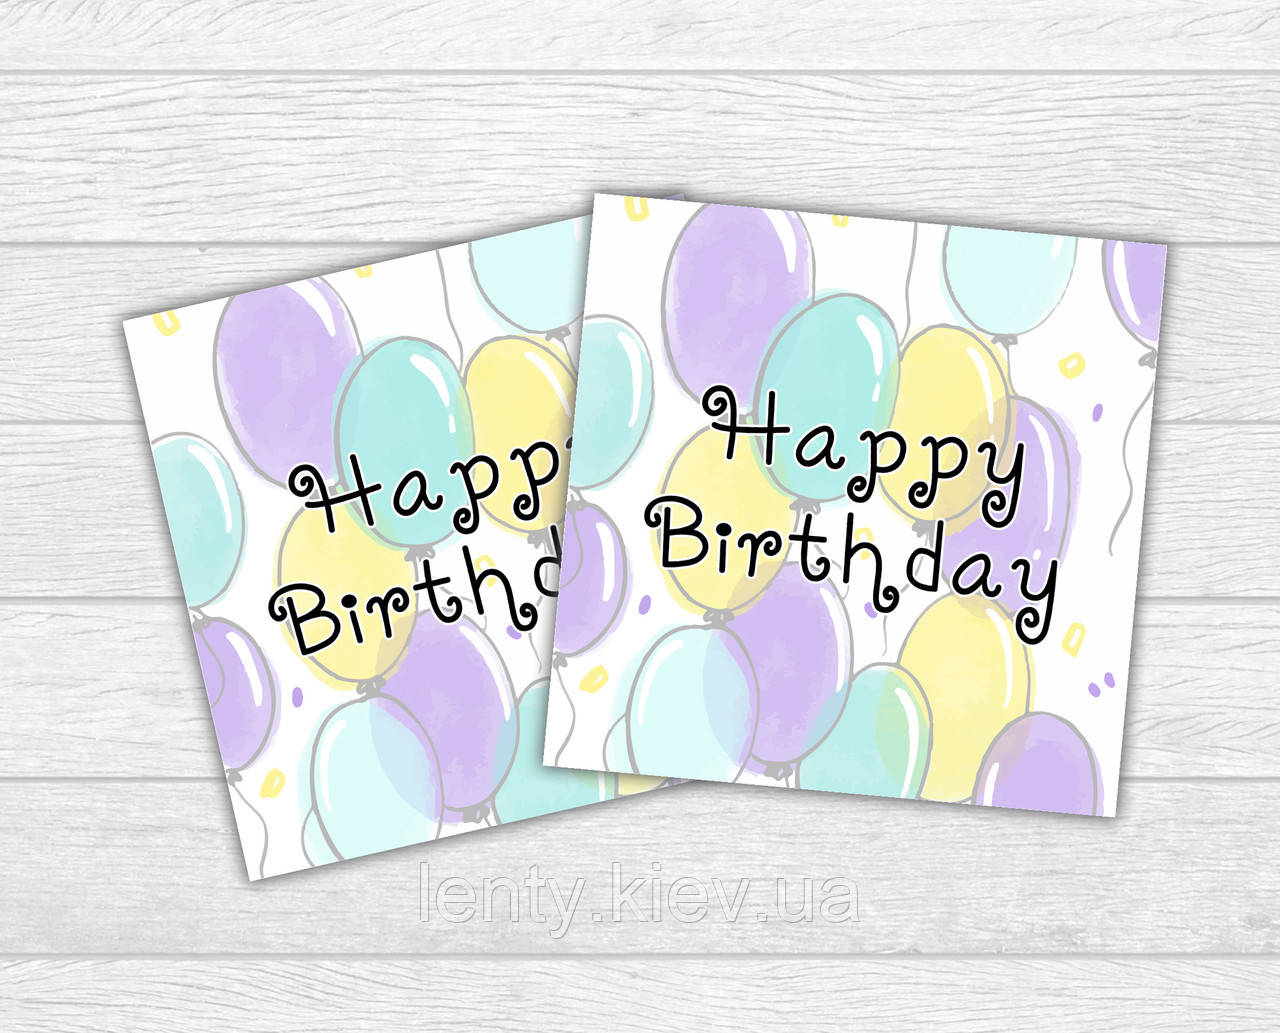 Міні листівка "Happy Birthday" повітряні кульки для подарунків, квітів, букетів (бірочка)